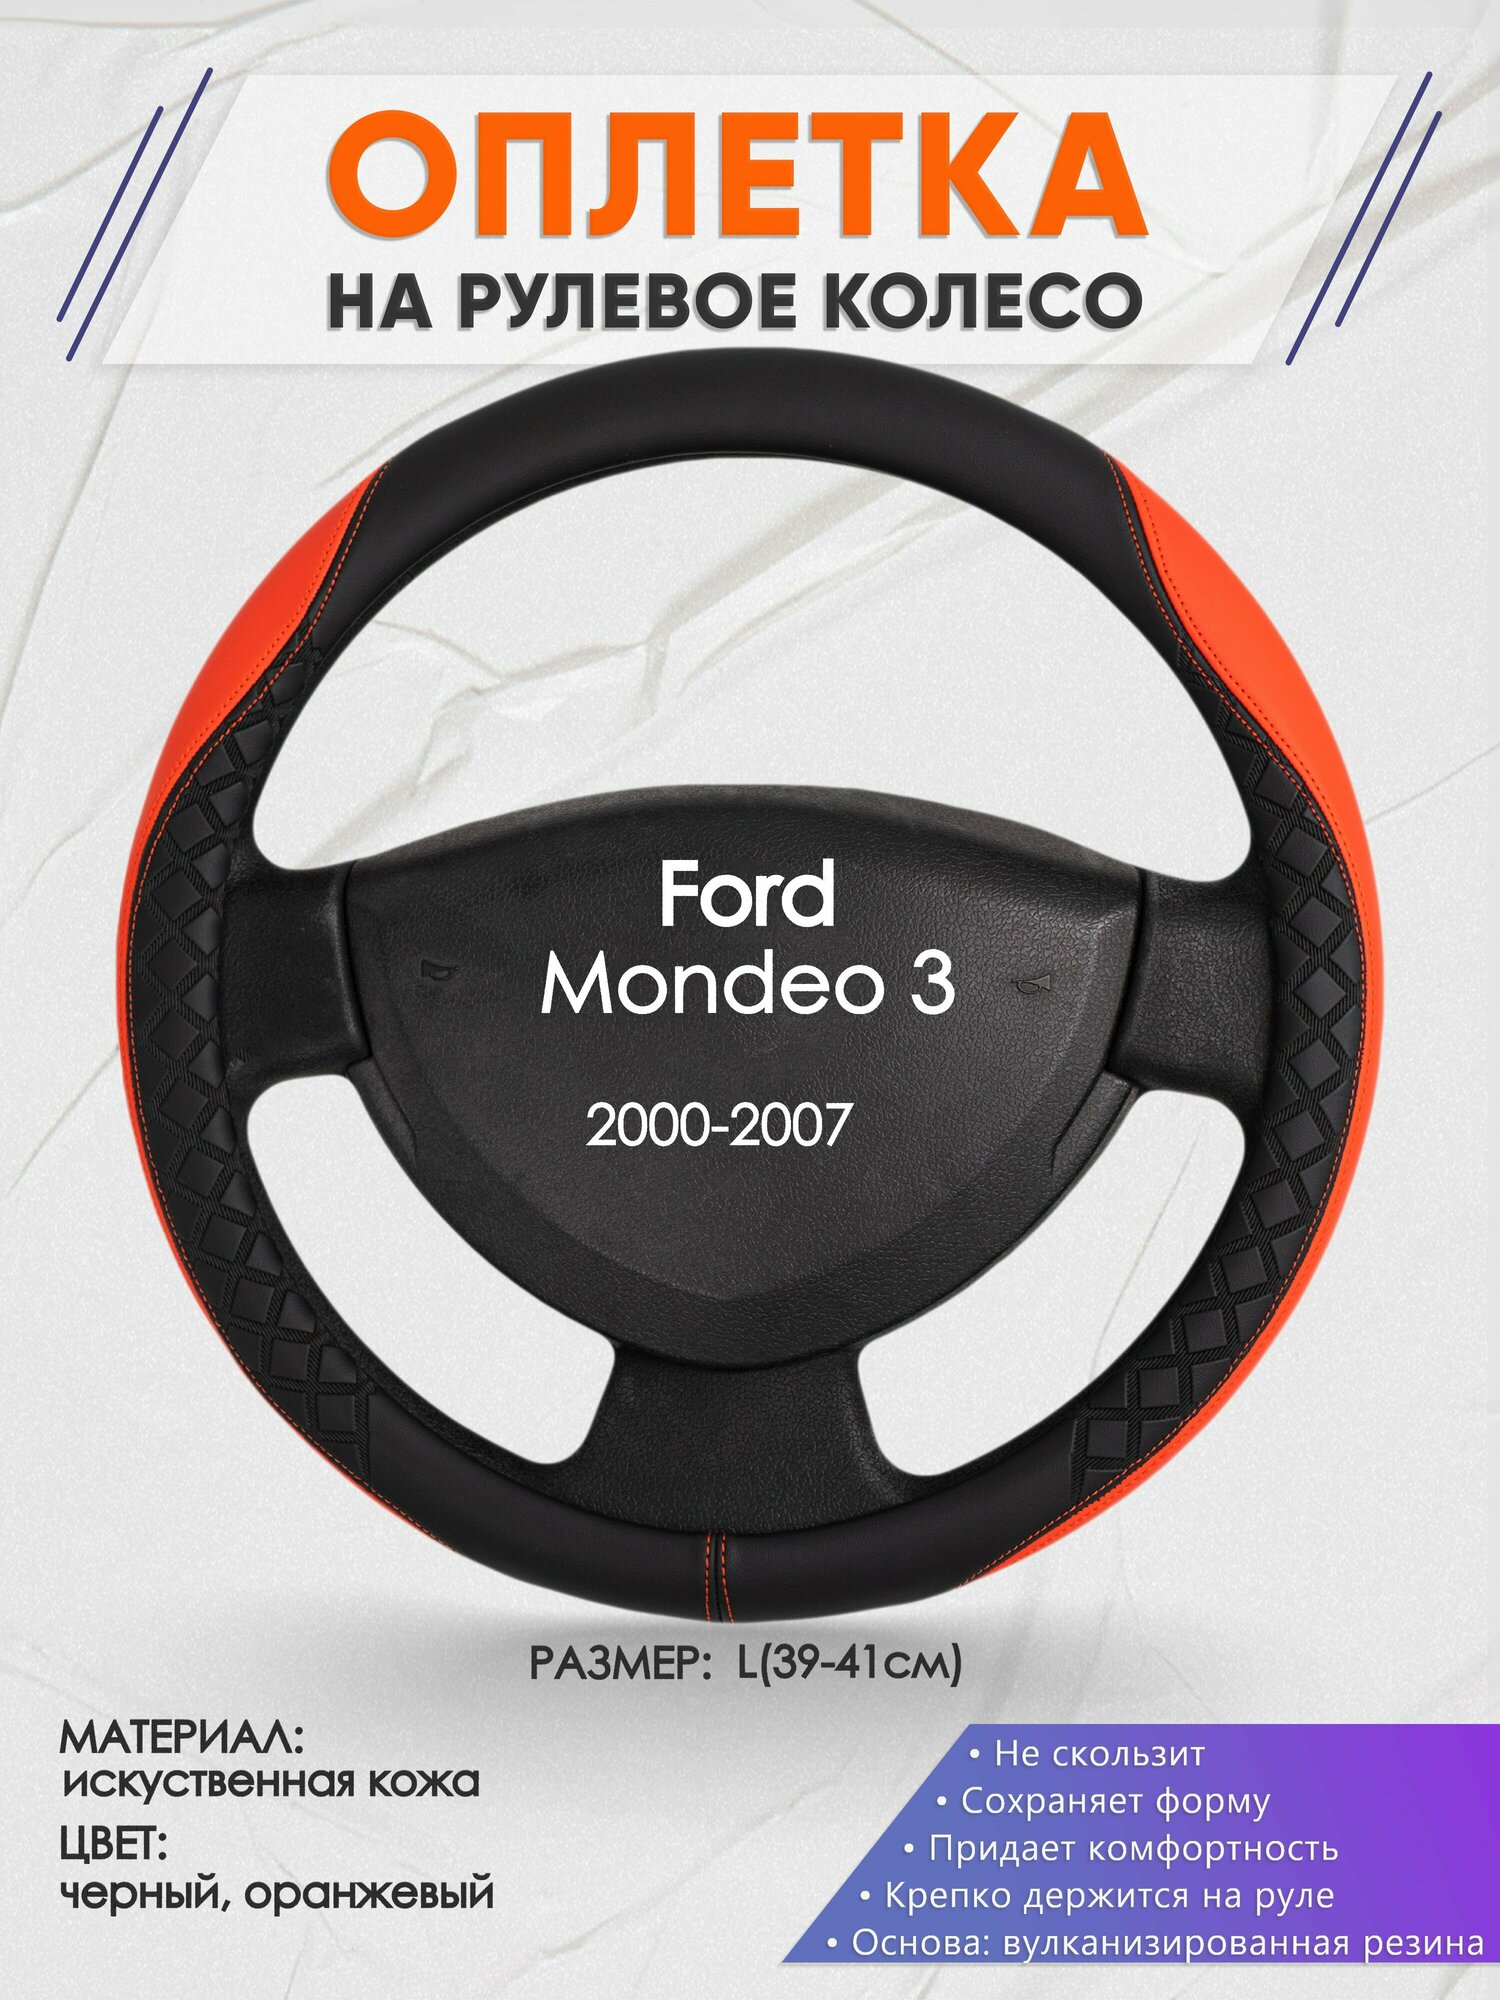 Оплетка на руль для Ford Mondeo 3(Форд Мондео 3) 2000-2007 L(39-41см) Искусственная кожа 61